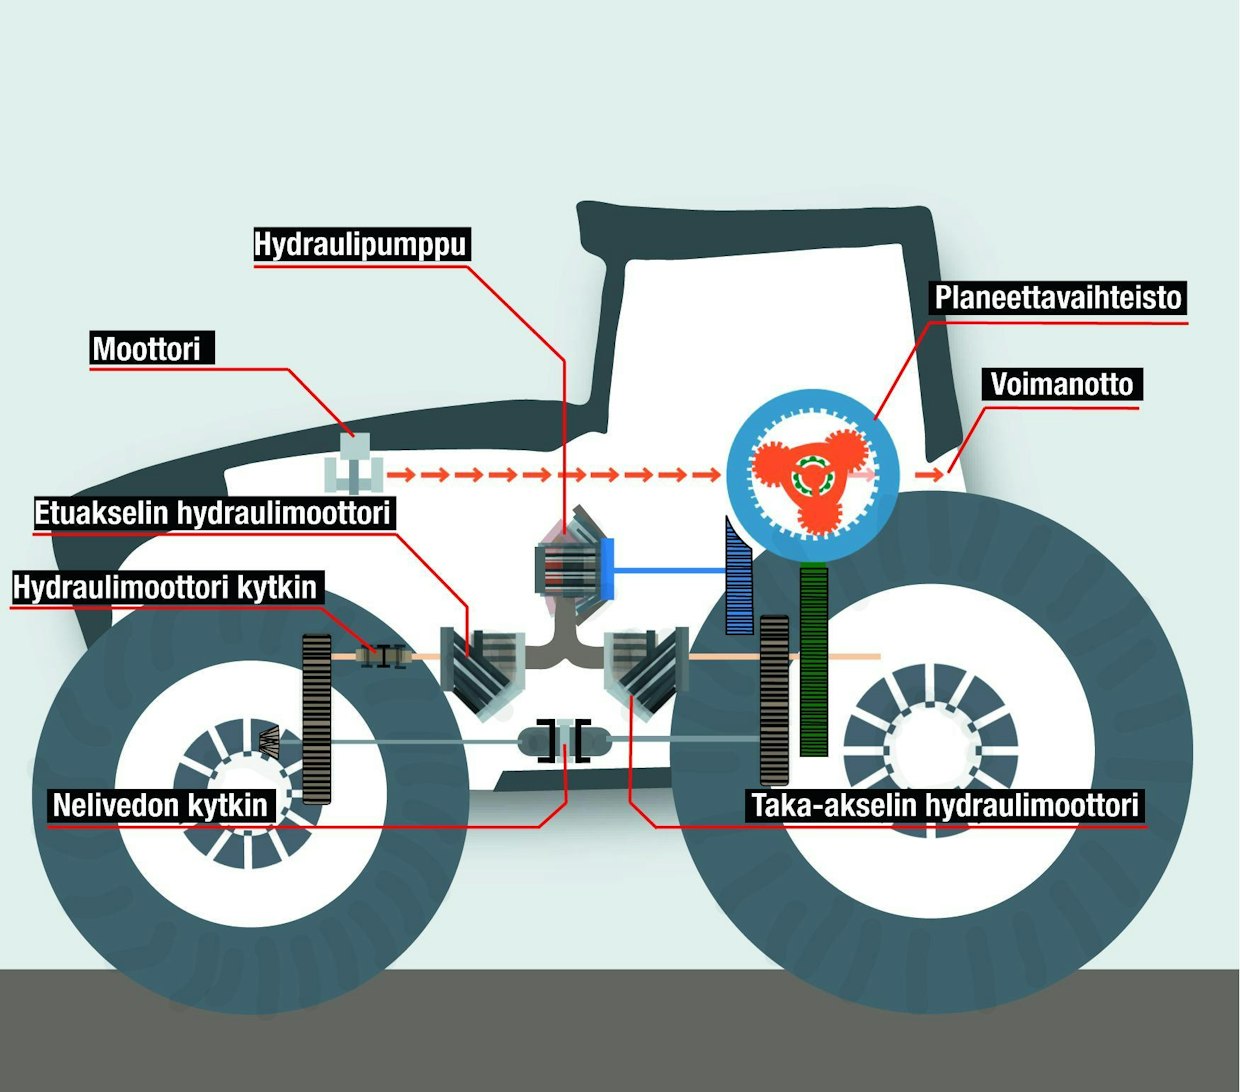 Fendt 1000 sarjan-traktori on alun perin suunniteltu 60 km/h nopeudelle. Traktorissa on ainutlaatuinen VarioDrive-voimansiirto, jossa on oma portaaton vaihteisto sekä etu- että taka-akselille. Automatiikka säätää etu- ja taka-akselin nopeutta siten, että tehoa ei kulu tarpeettomaan luistoon. Maantiellä traktorilla ajetaan pääasiassa takavetoisena, mutta etu- ja taka-akselin voimansiirto voidaan tarvittaessa kytkeä yhteen, esimerkiksi liukkaassa ylämäessä.